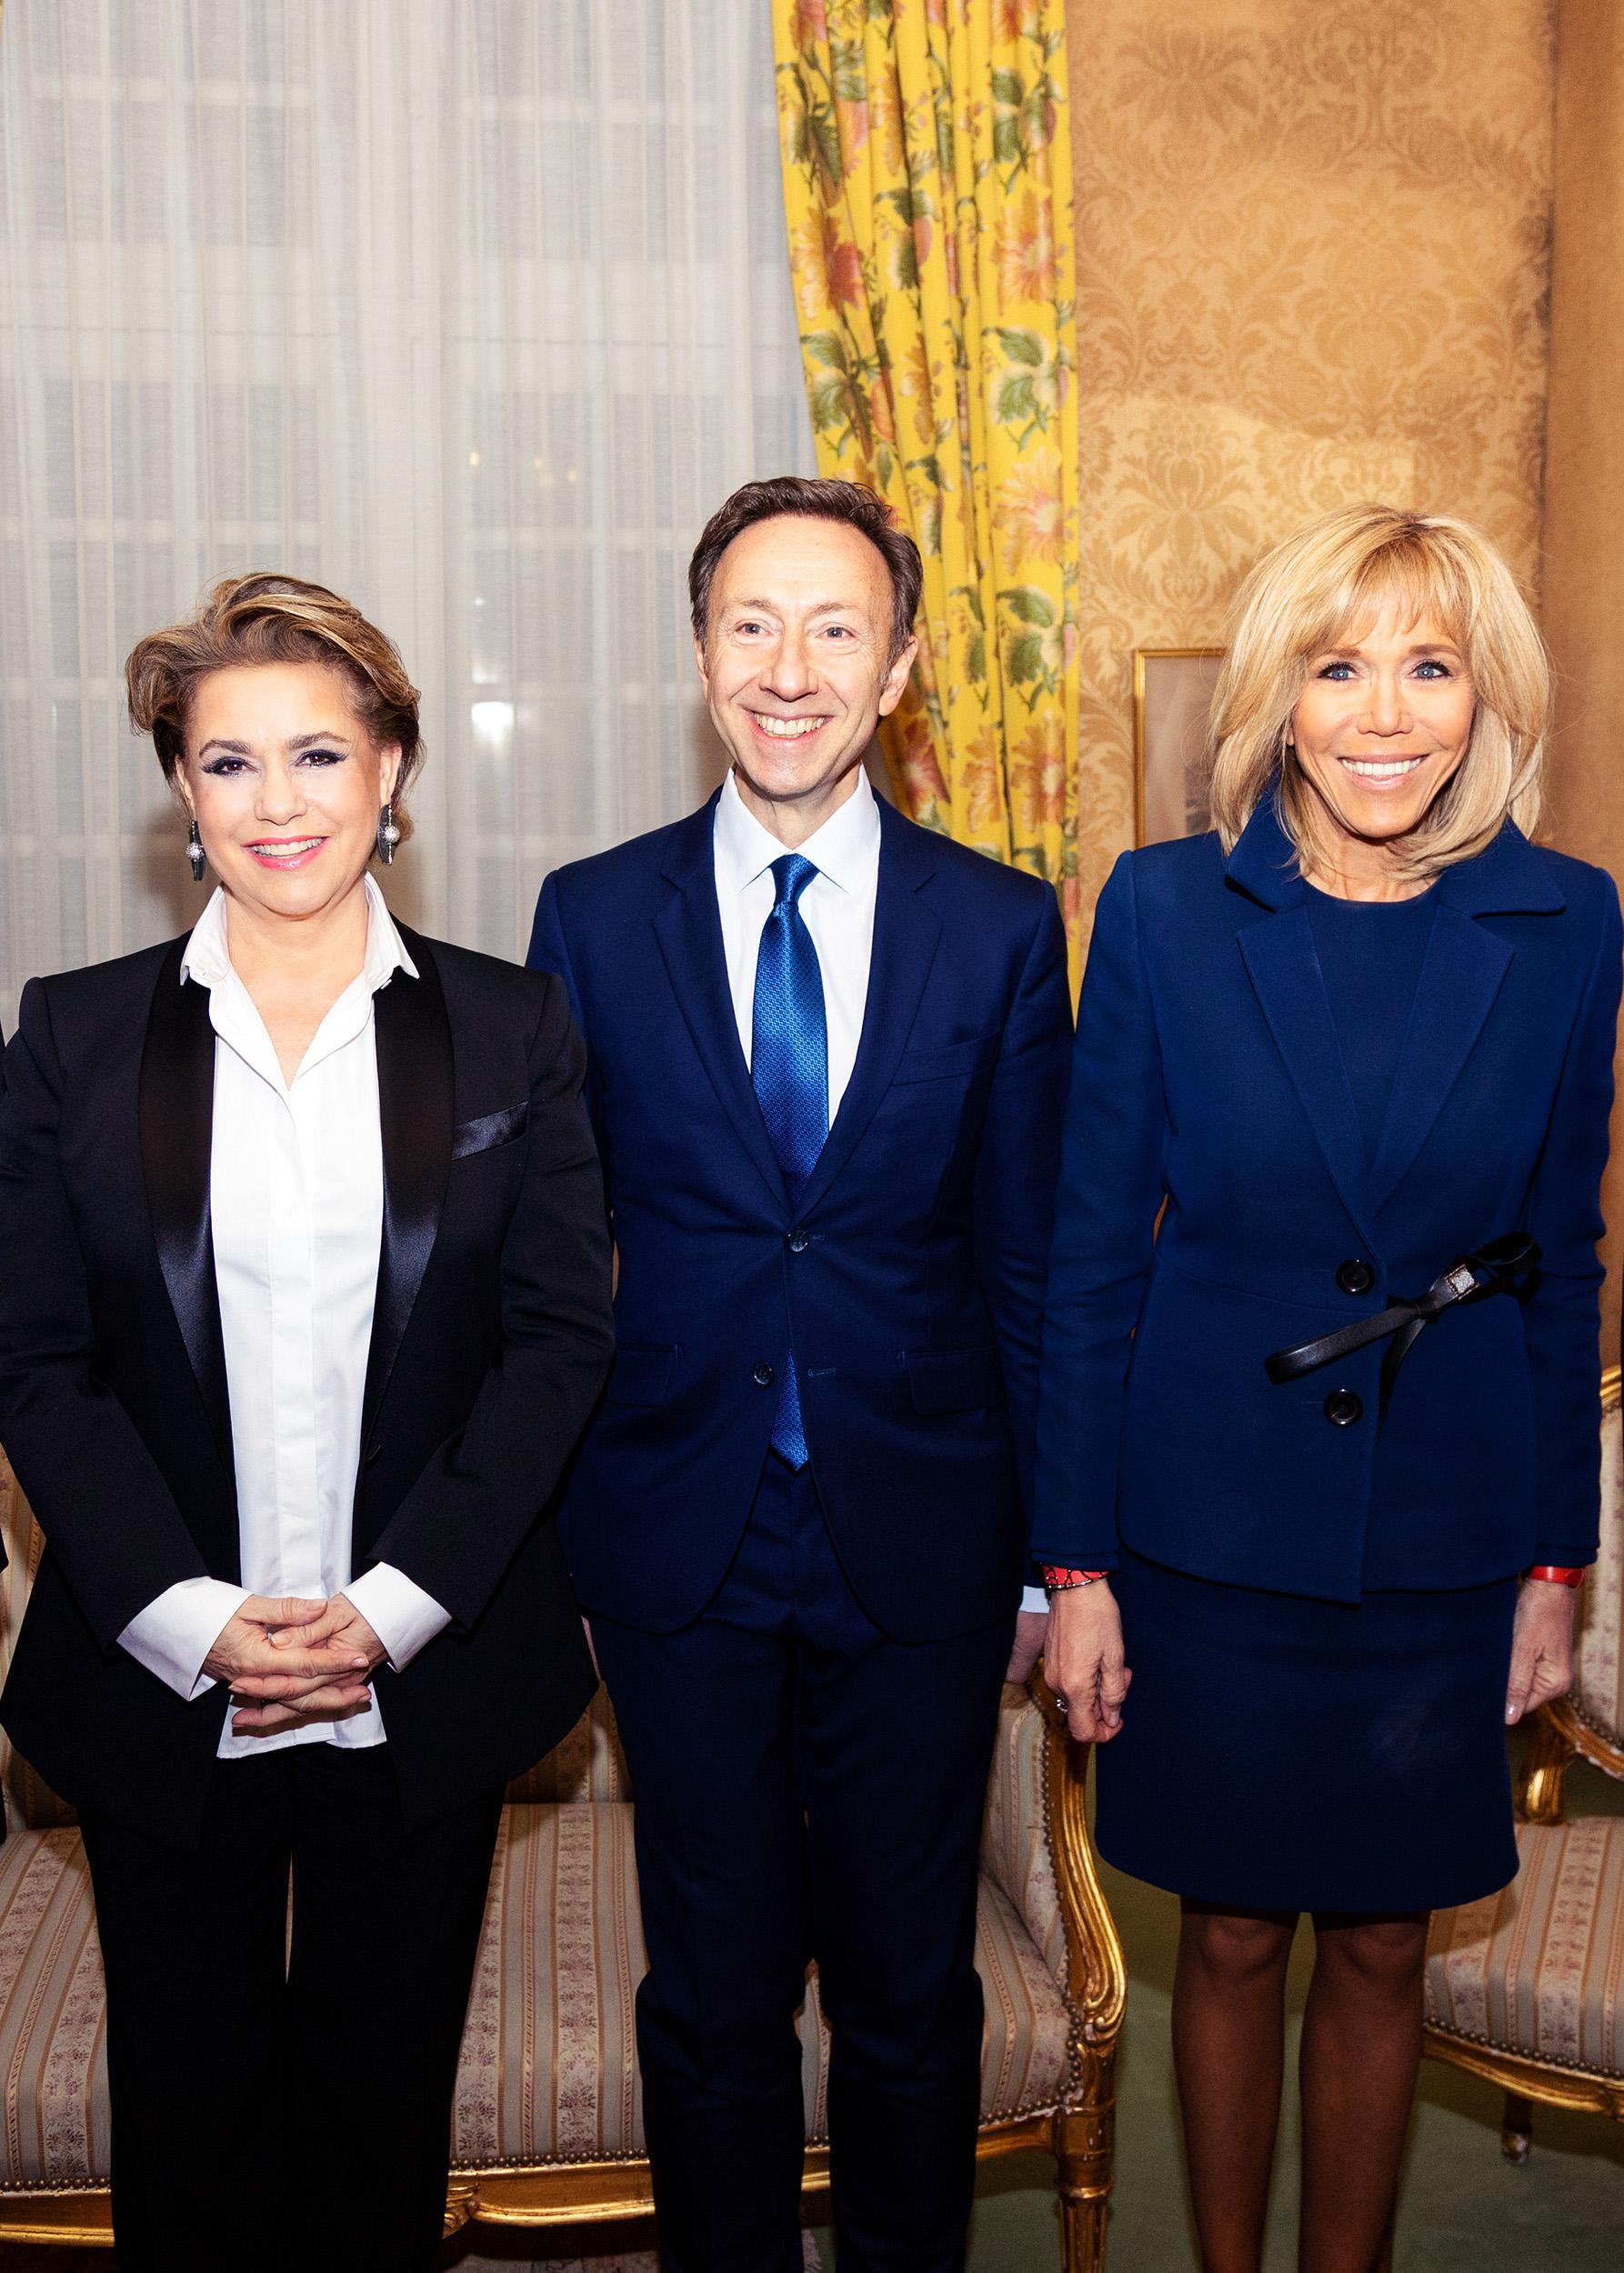 De gauche à droite: S.A.R. la Grande-Duchesse de Luxembourg, Stéphane Bern, Madame Brigitte Macron
